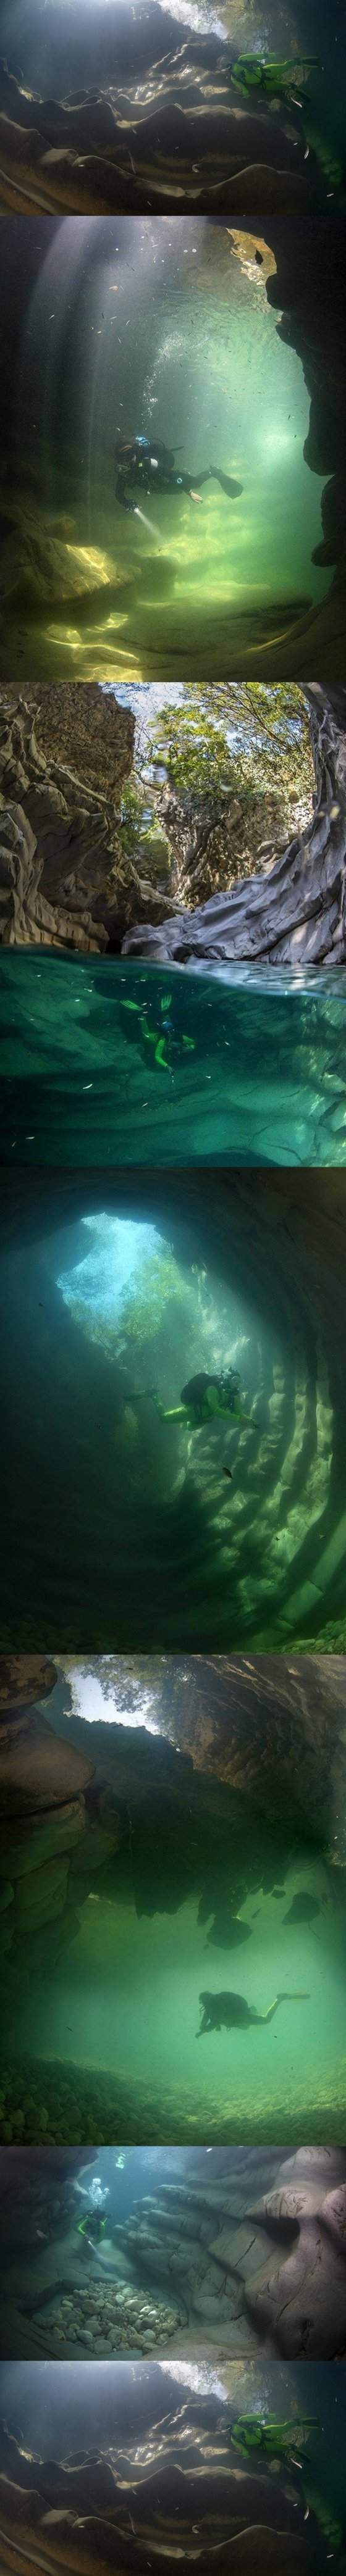 მარტვილის კანიონის წყლისქვეშა ულამაზესი სანახაობა ტურისტებს იზიდავს